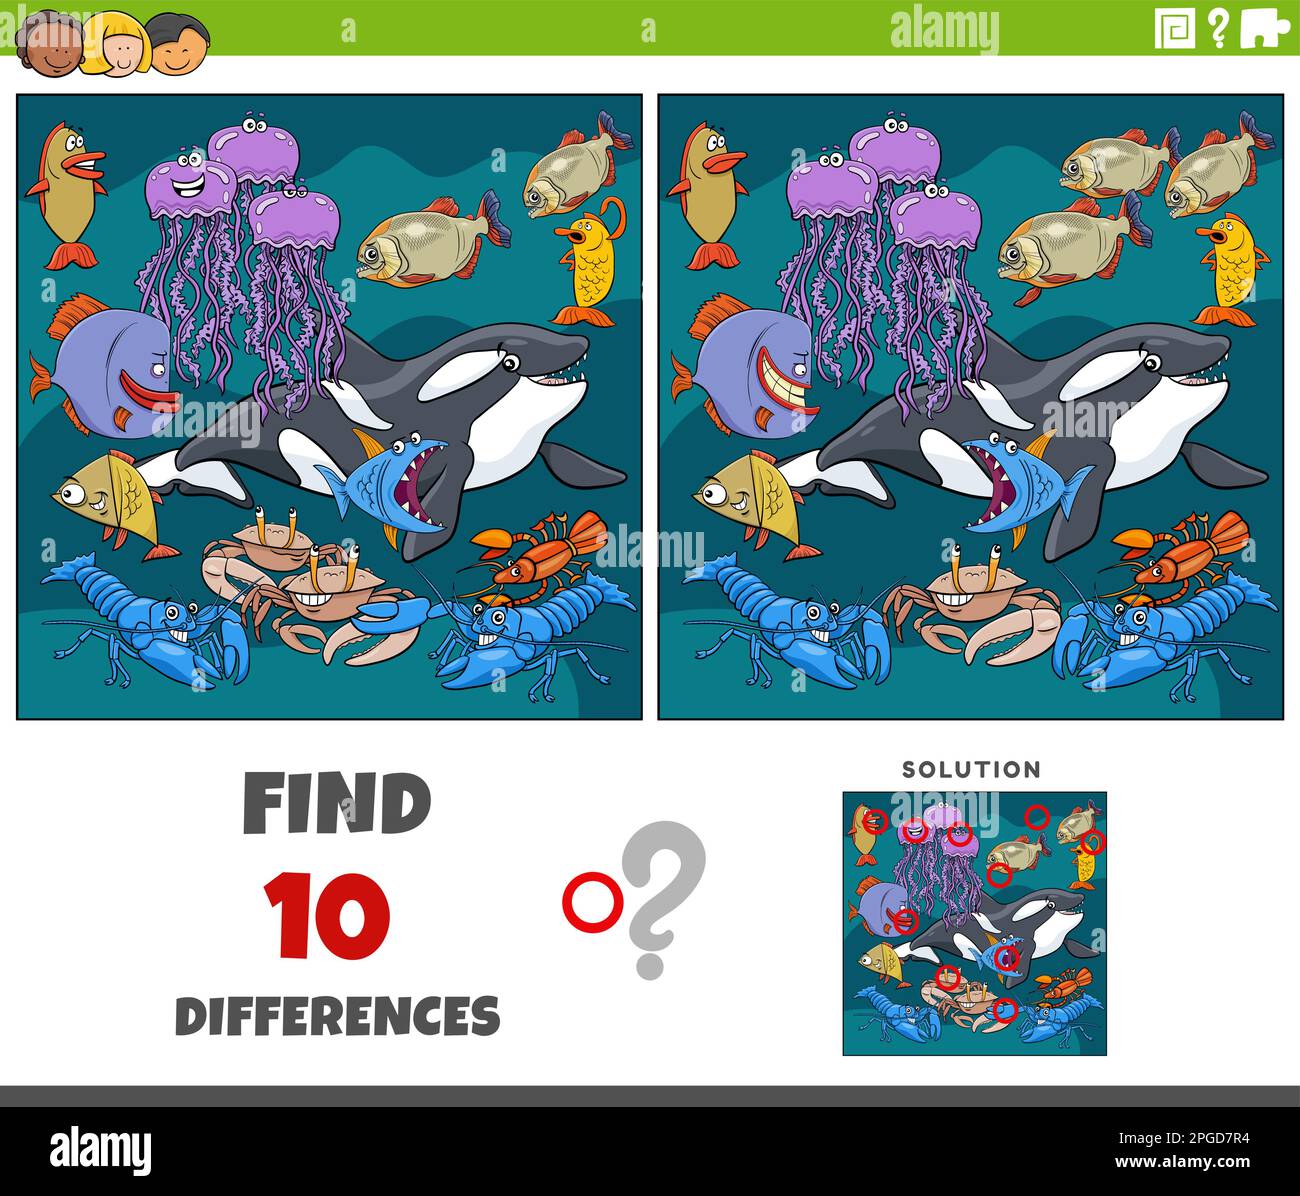 Illustration de dessin animé de trouver les différences entre les images jeu éducatif avec les personnages d'animaux marins de bande dessinée Illustration de Vecteur